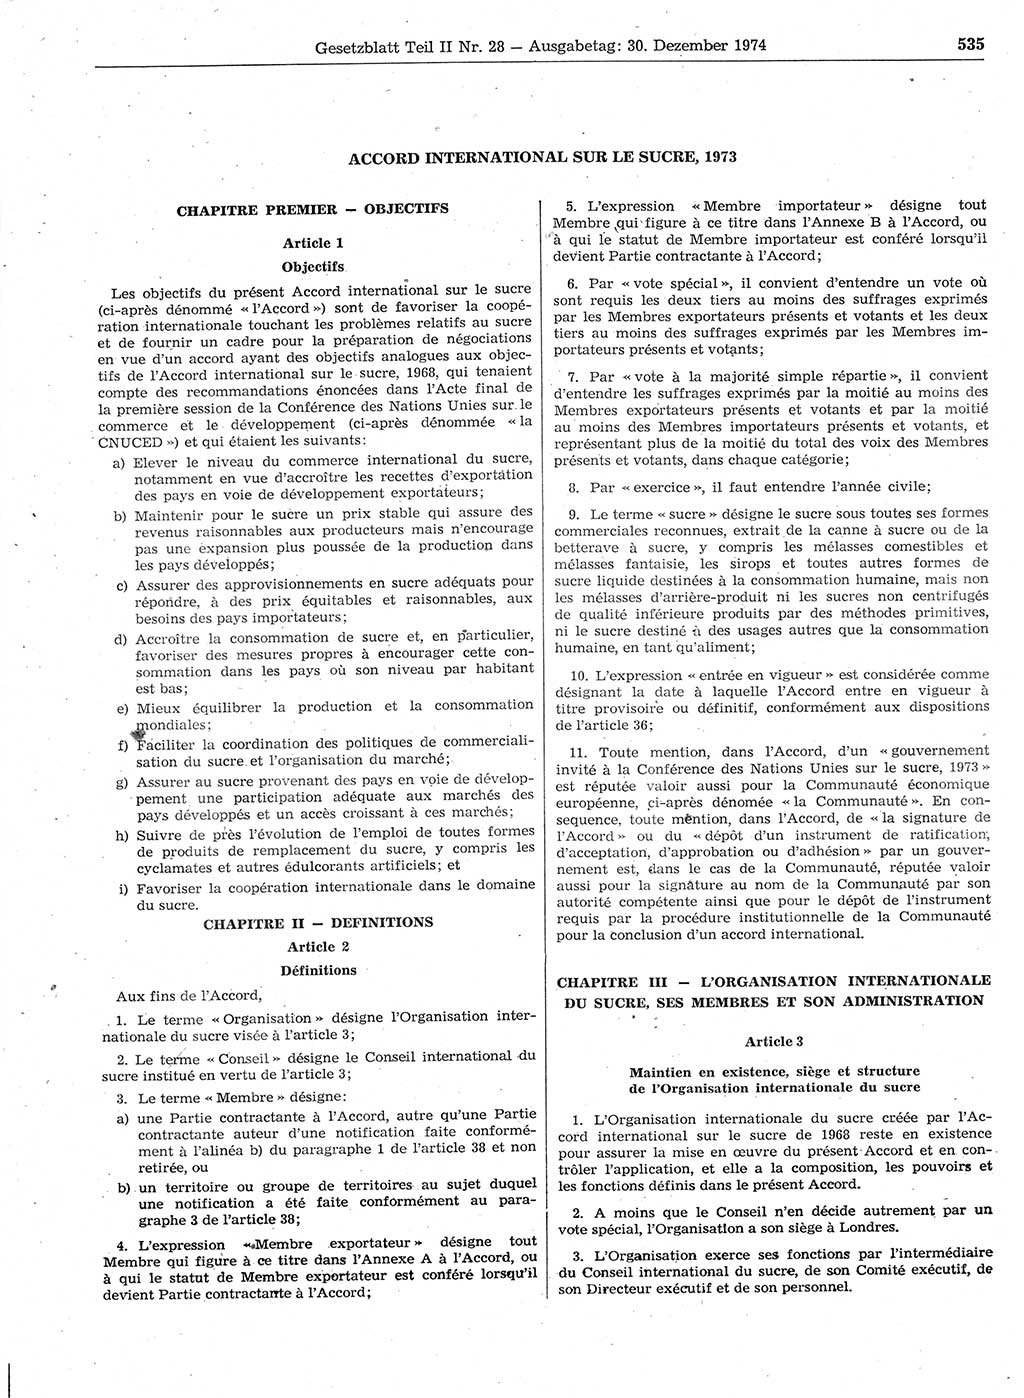 Gesetzblatt (GBl.) der Deutschen Demokratischen Republik (DDR) Teil ⅠⅠ 1974, Seite 535 (GBl. DDR ⅠⅠ 1974, S. 535)